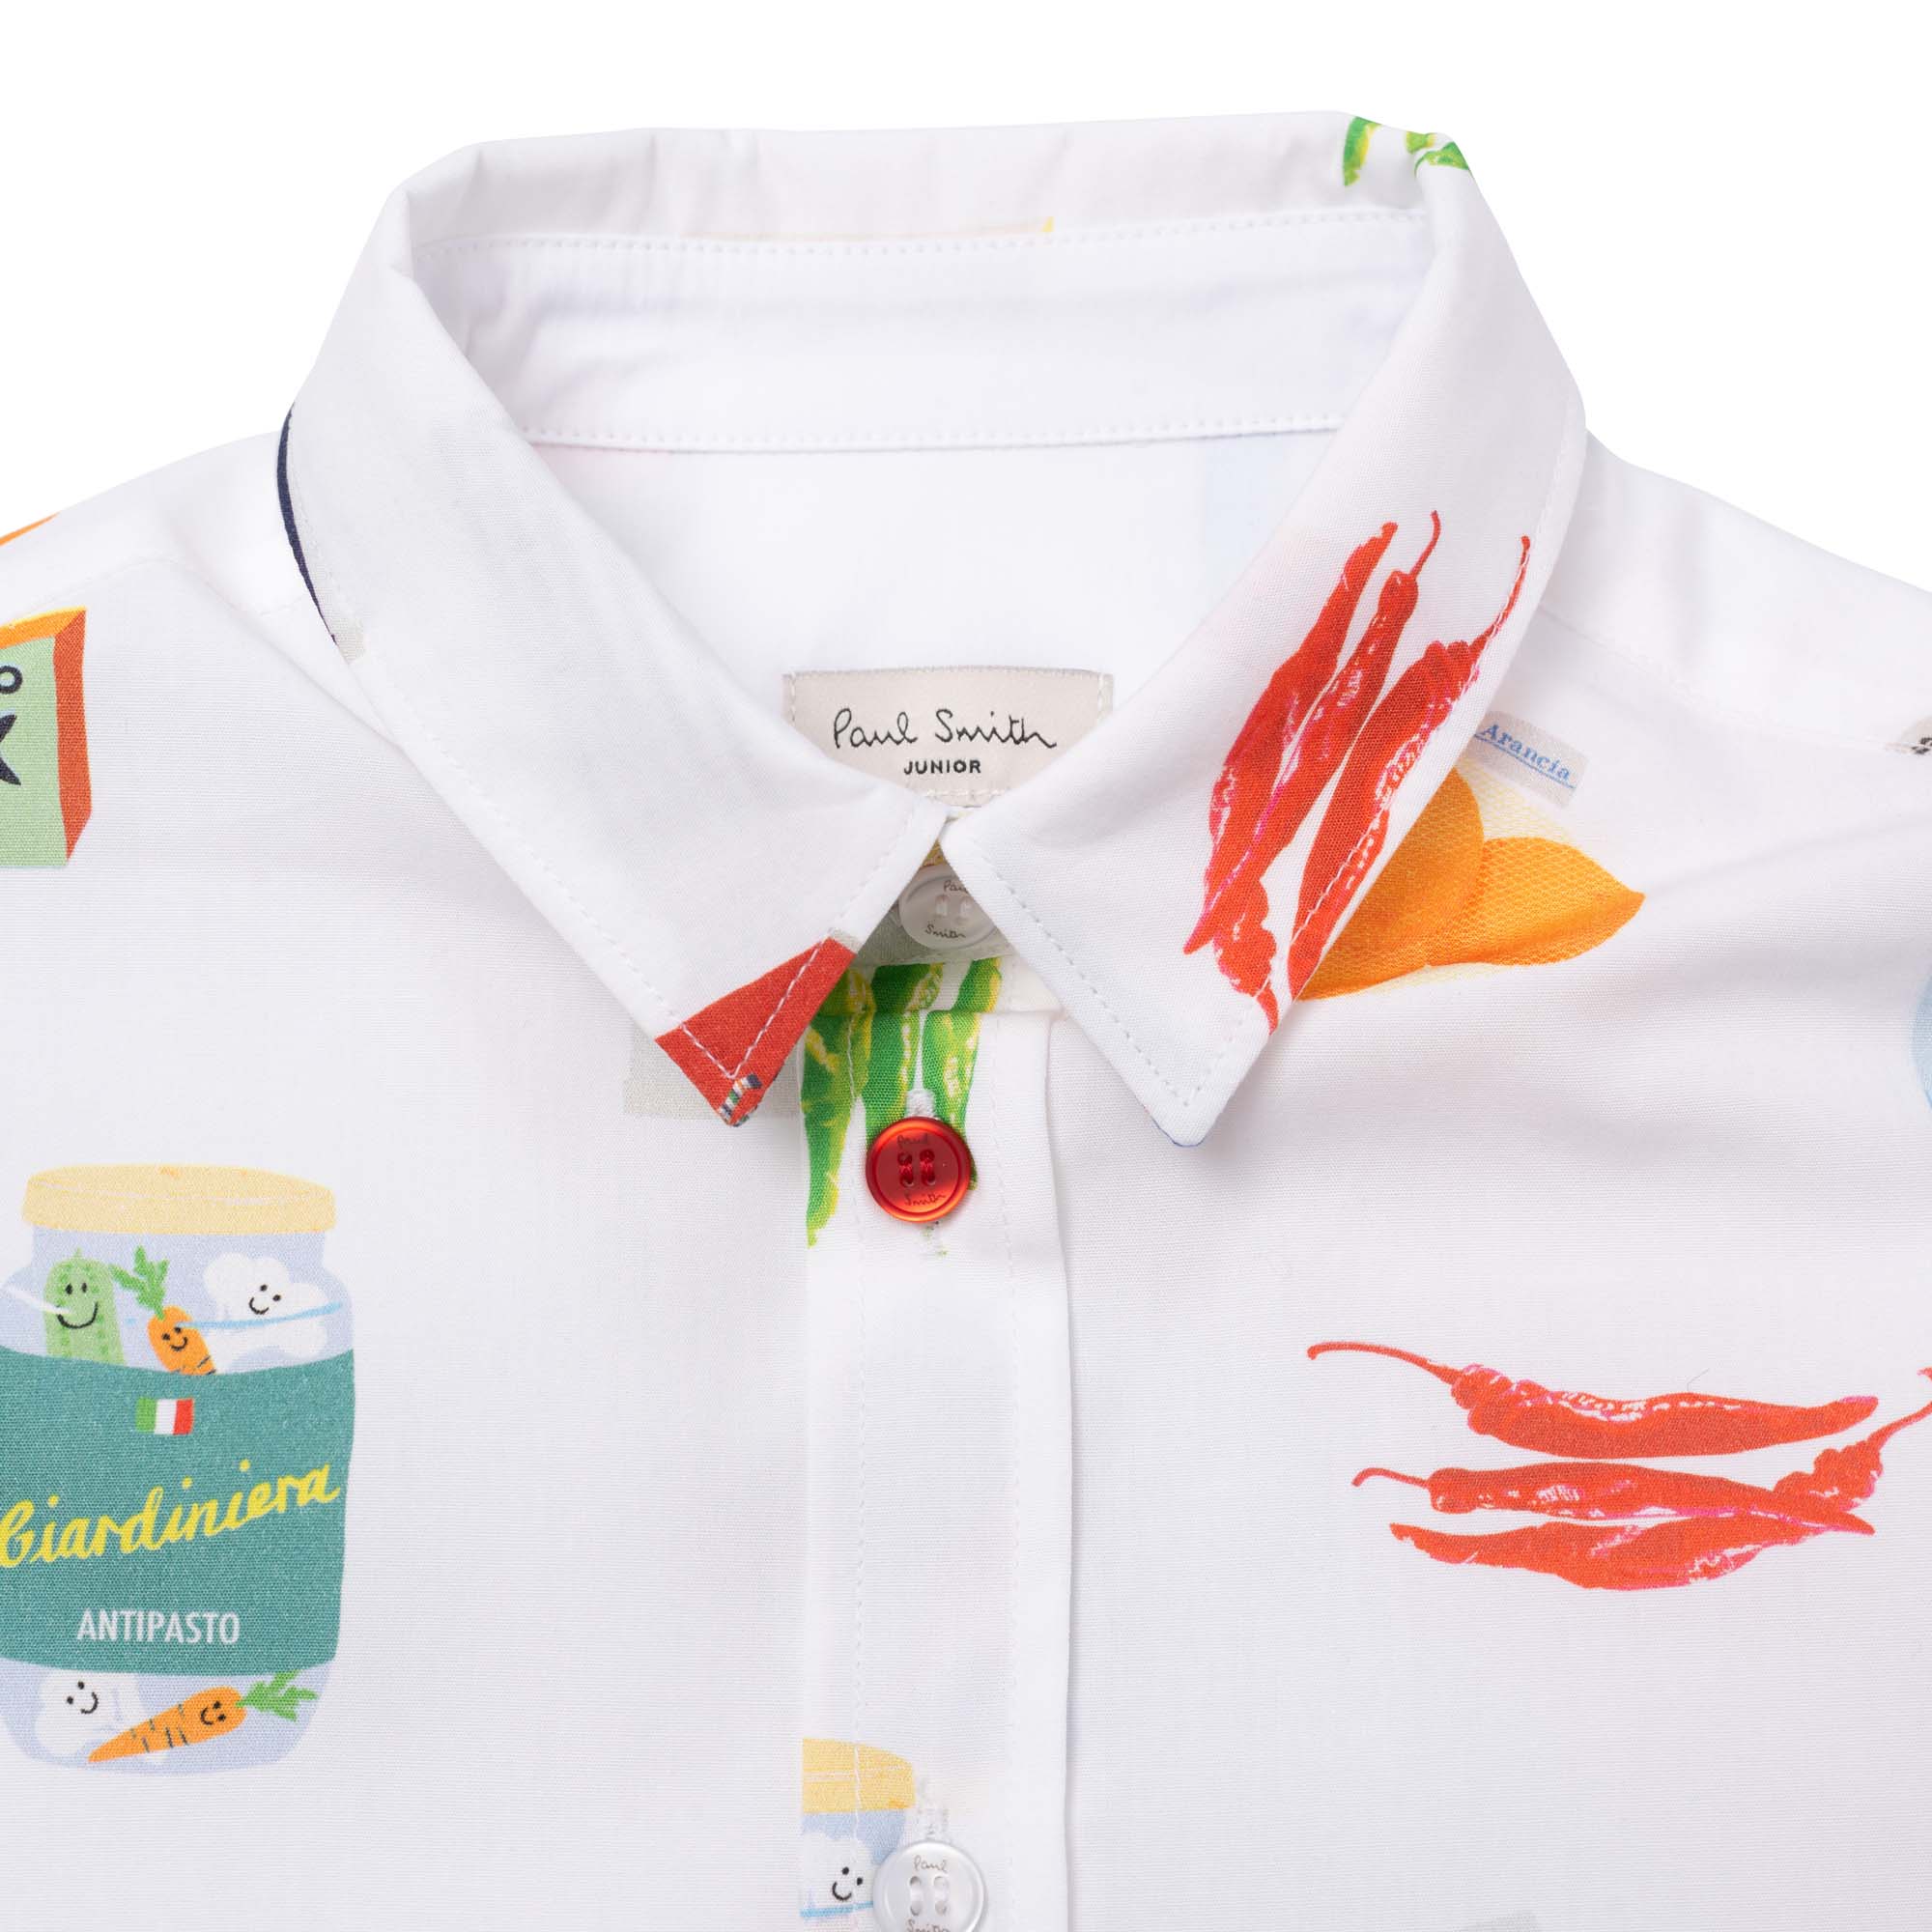 Vliegveld Investeren Gaan wandelen PAUL SMITH JUNIOR Overhemd van poplin-katoen jongen wit - | Kids around